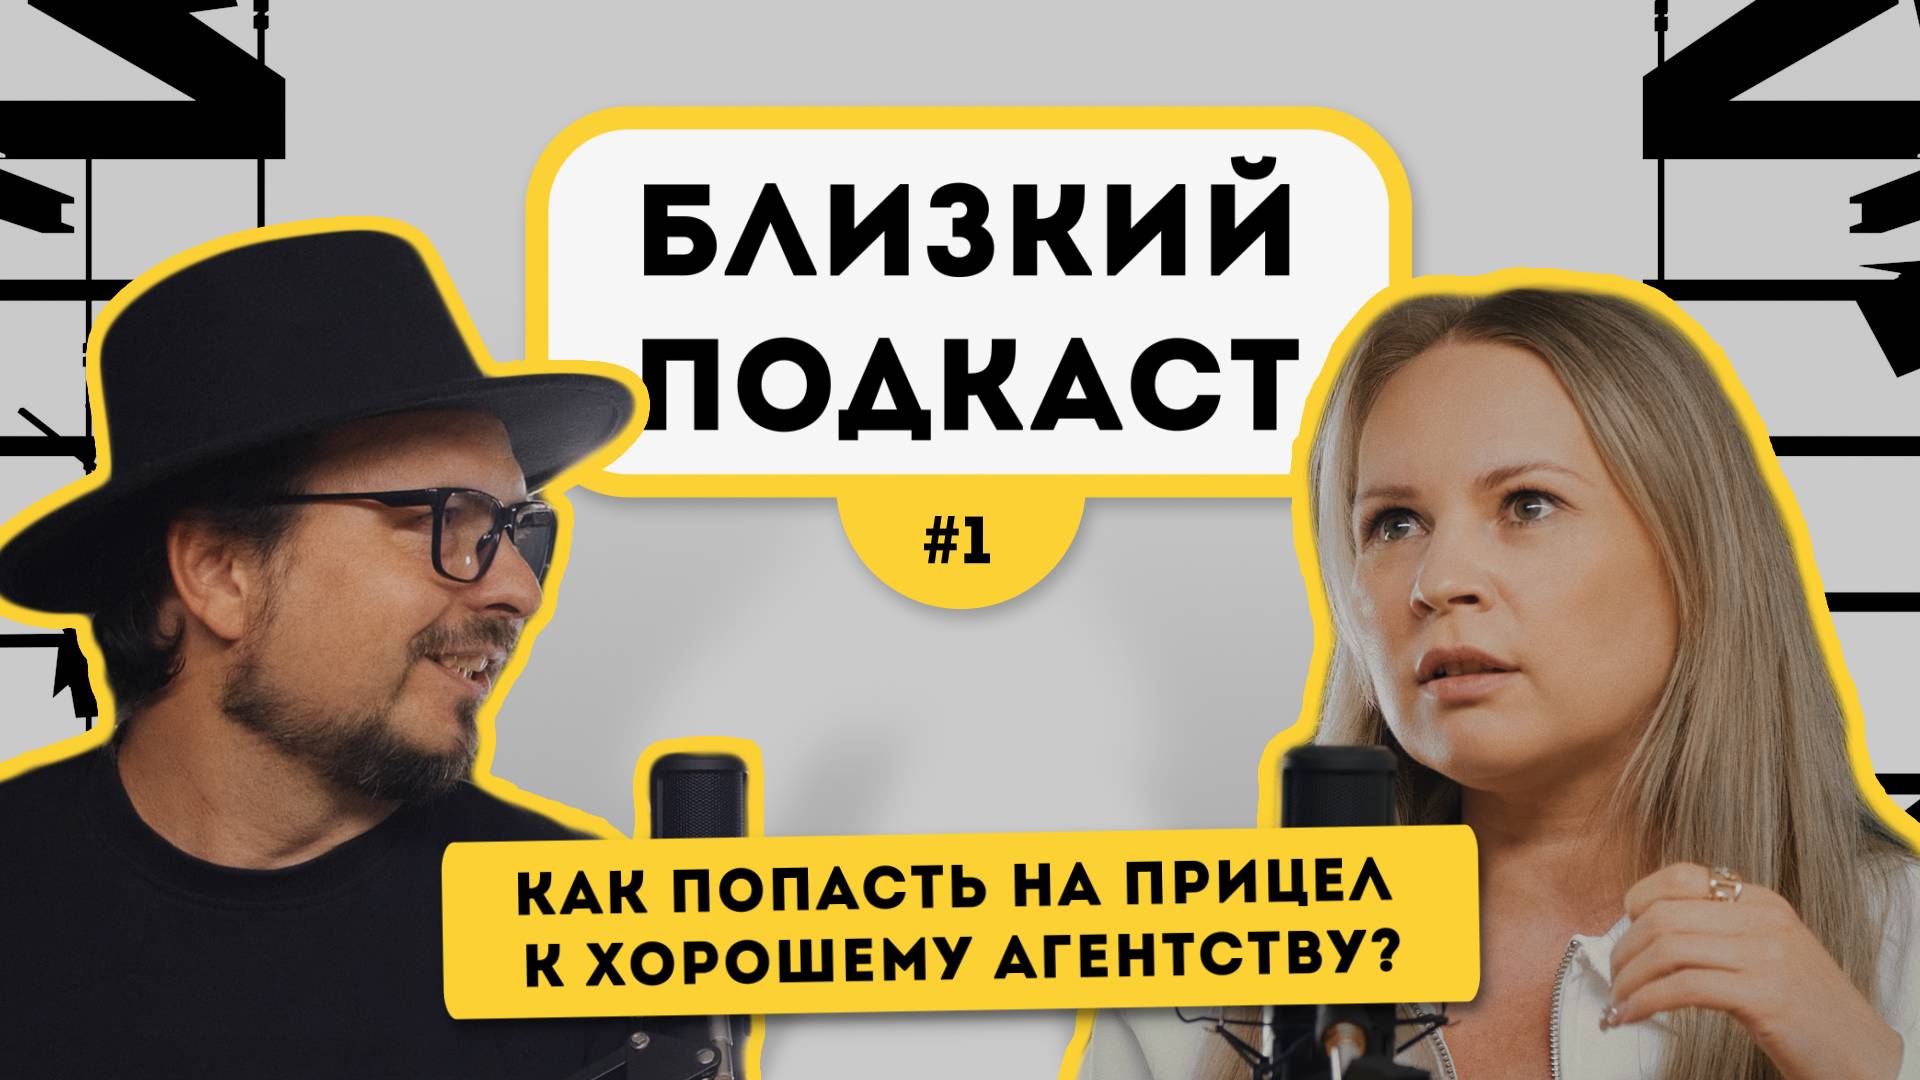 Близкий Подкаст #1 | Светлана Сколкова - GOLDEN LION | Как попасть на прицел к хорошему агентству?